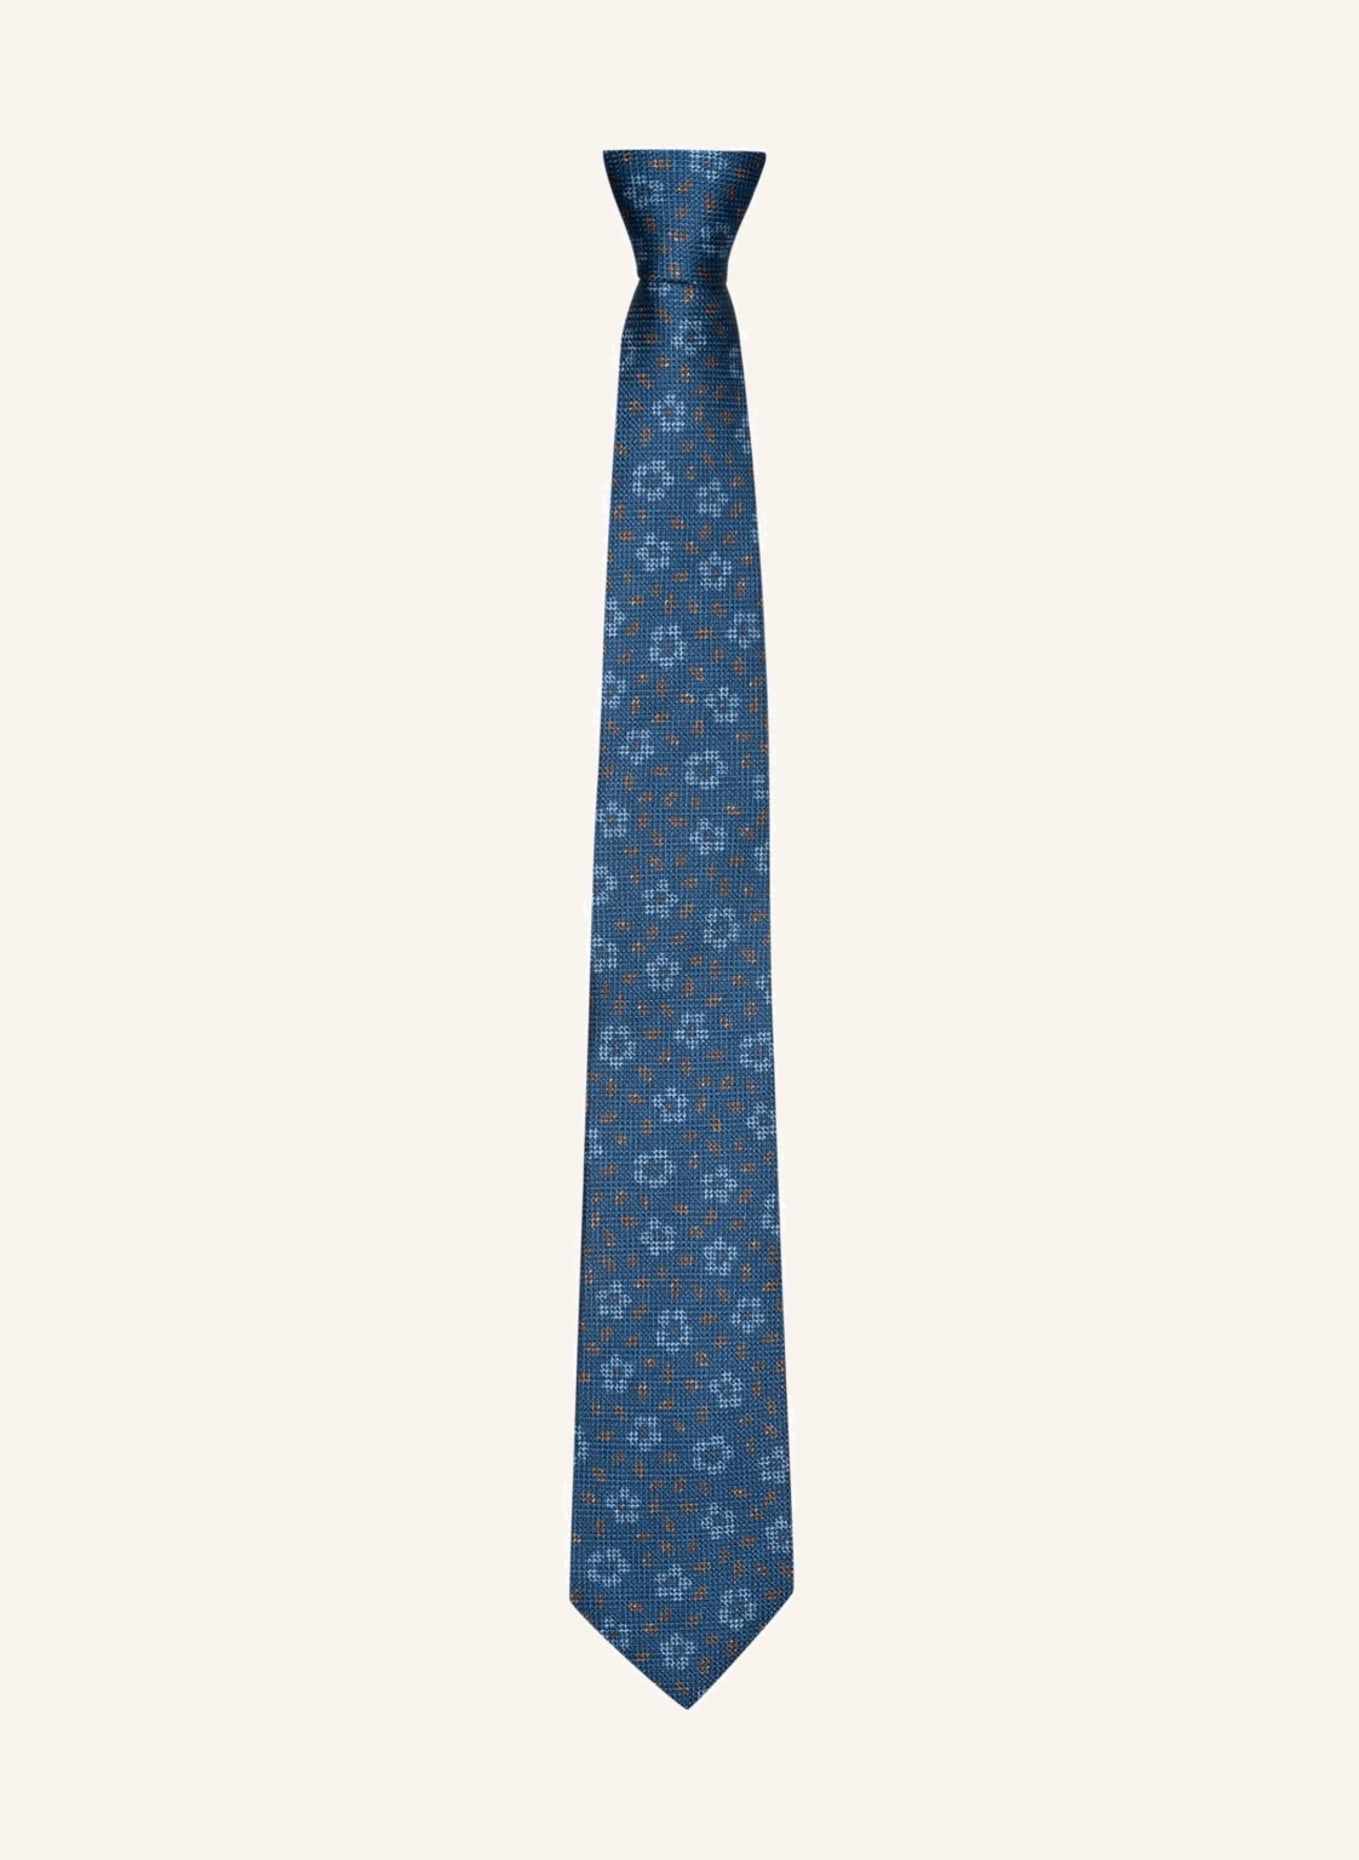 OLYMP SIGNATURE in Krawatte hellblau/ blau/ beige